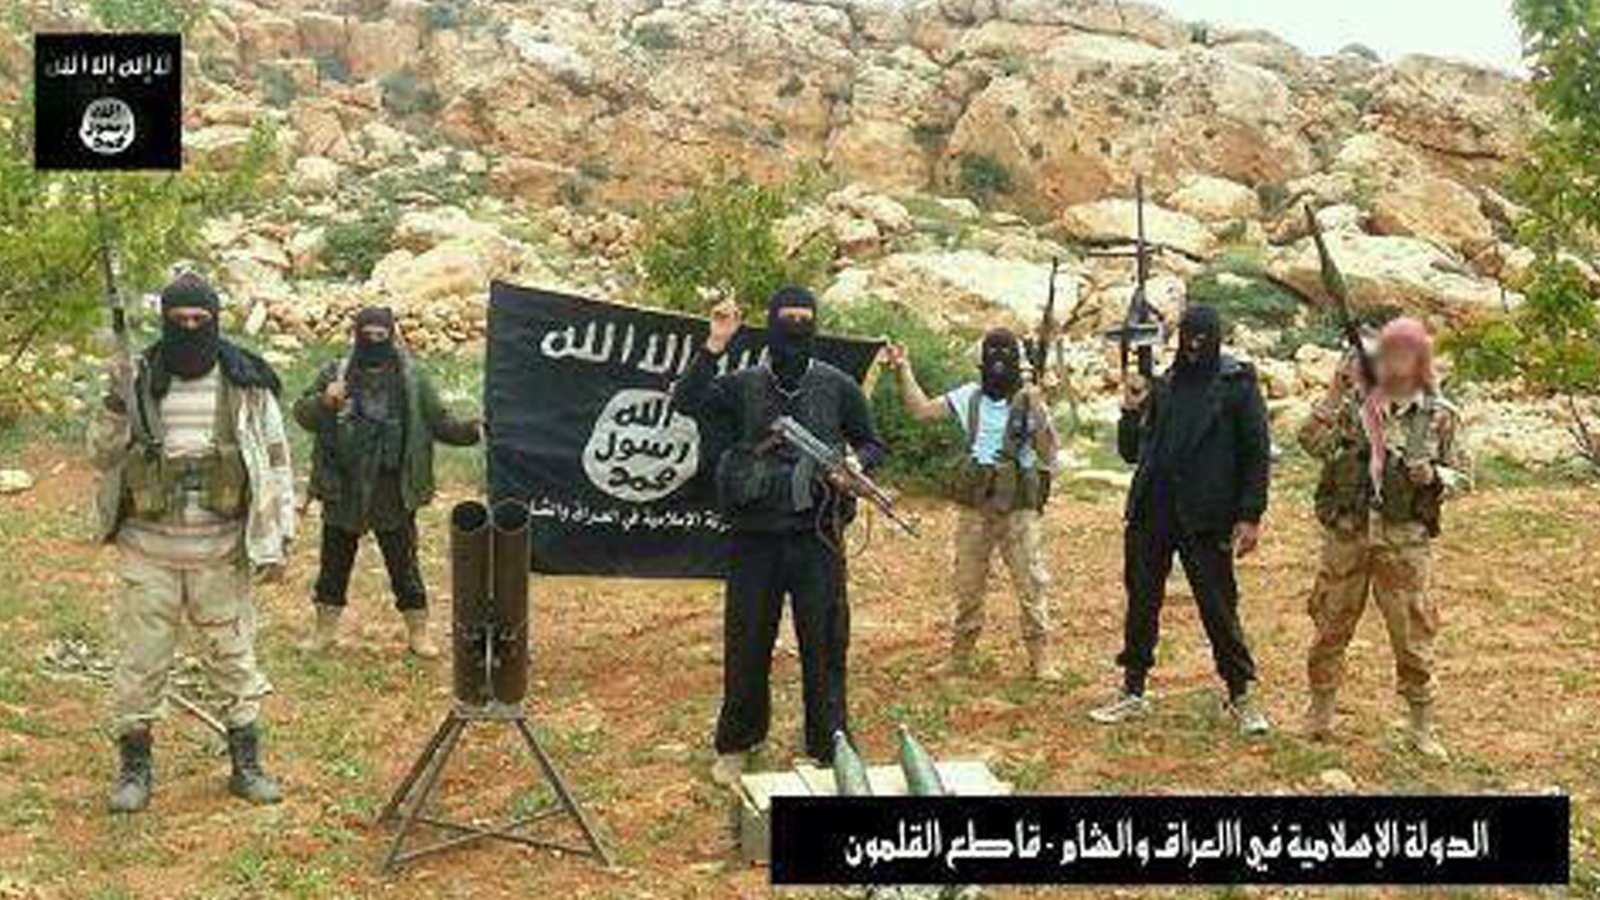 القلمون بيد "الدولة الإسلامية".. ومواقع الجيش "مكشوفة"!